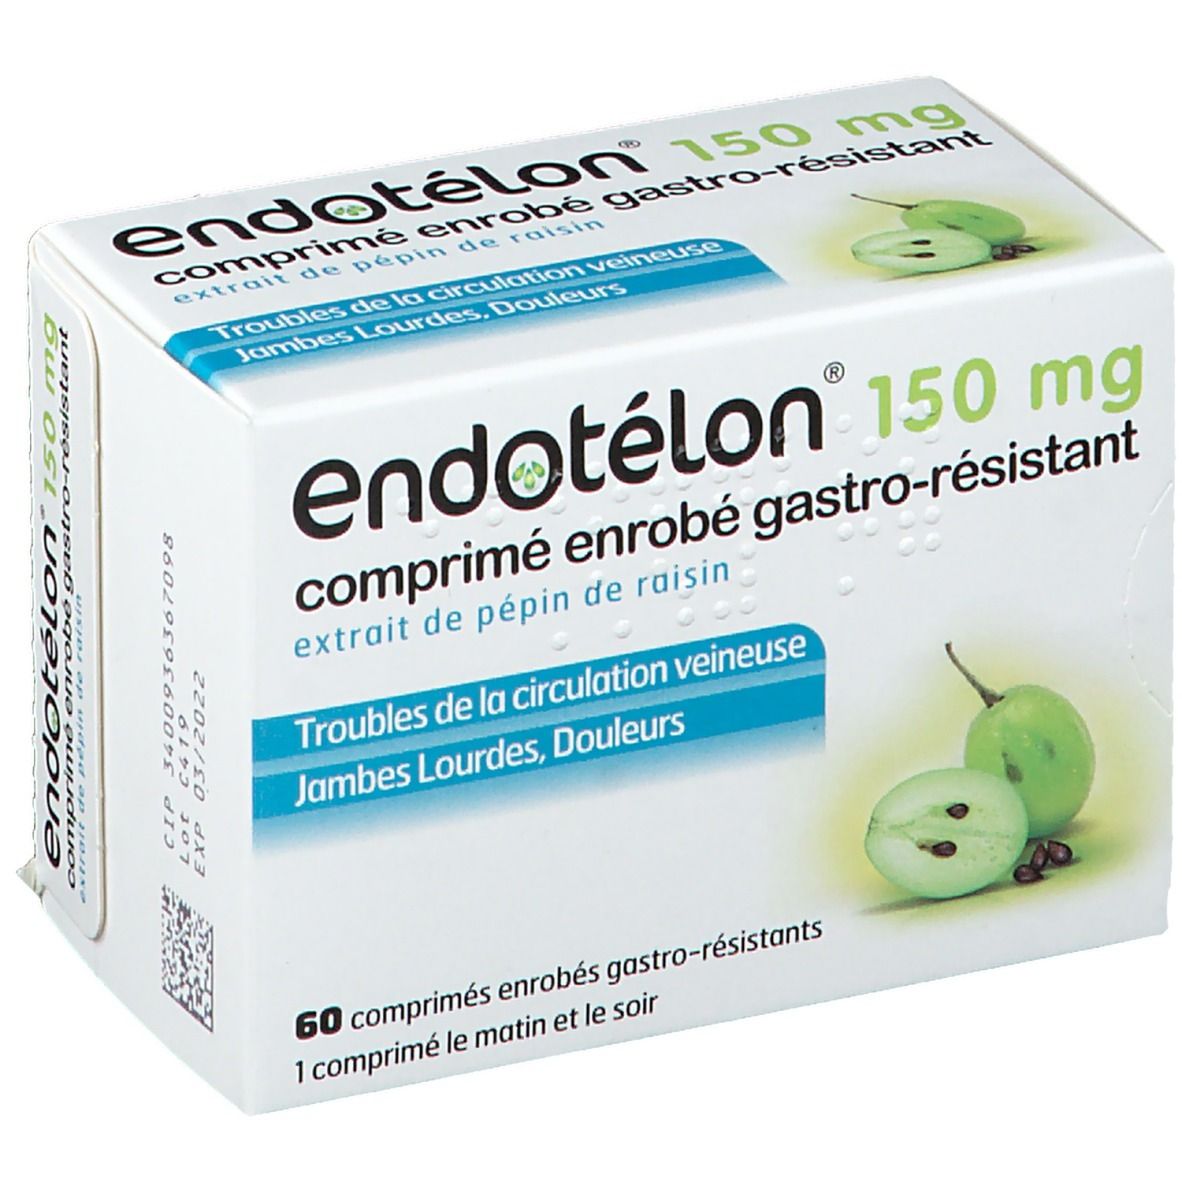 Endotelon® 150 mg